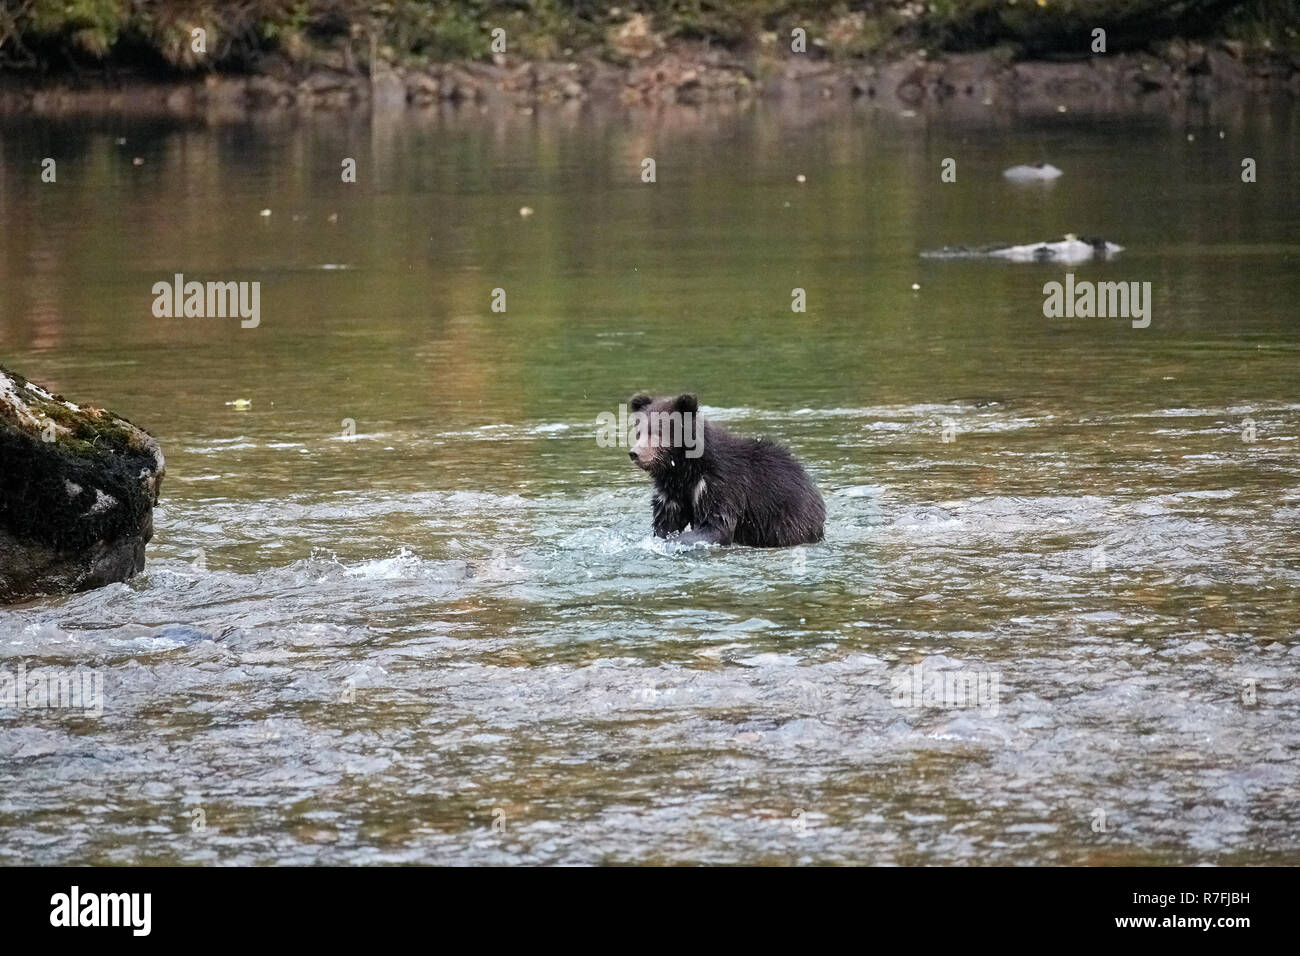 Grizzly Bear cub tente de prendre des saumons, la forêt pluviale de Great Bear, Canada Banque D'Images